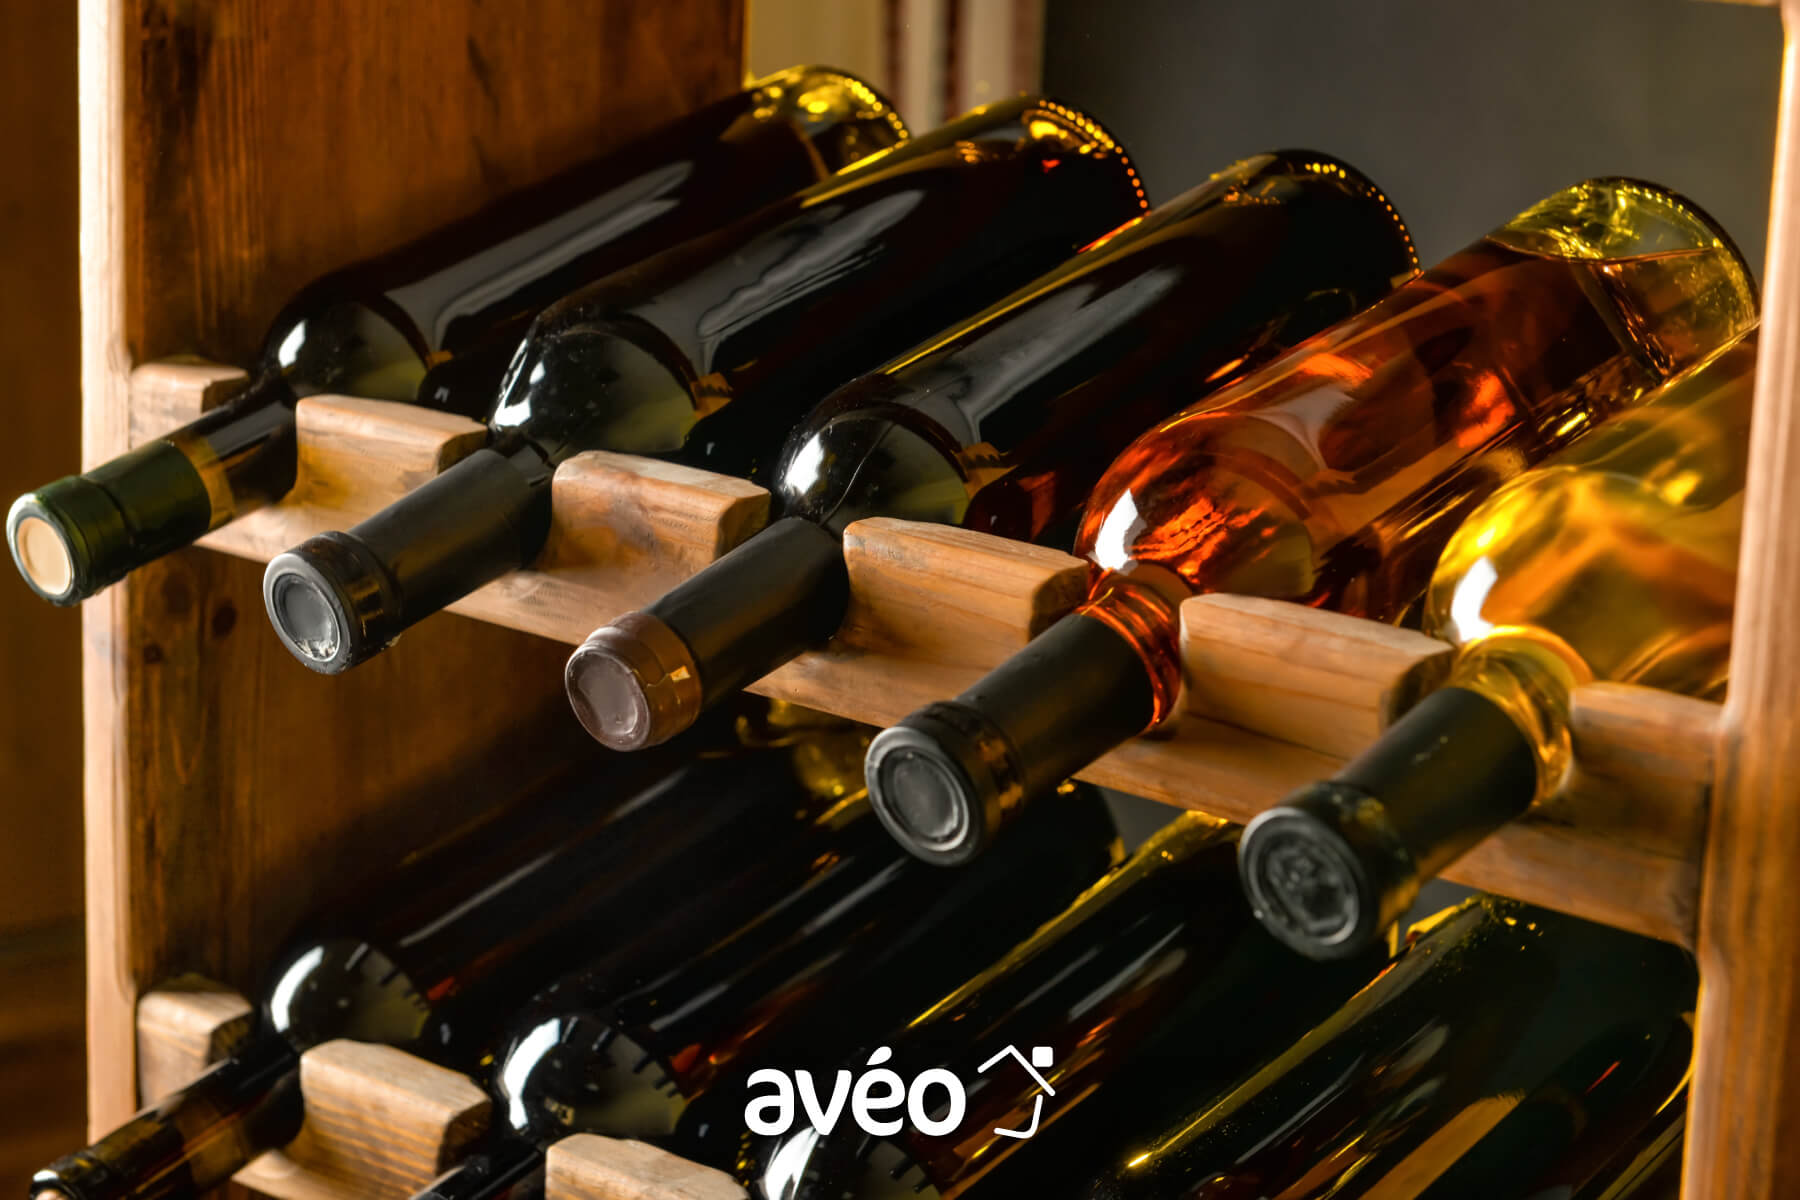 Optez pour une cave à vin dans votre cuisine.